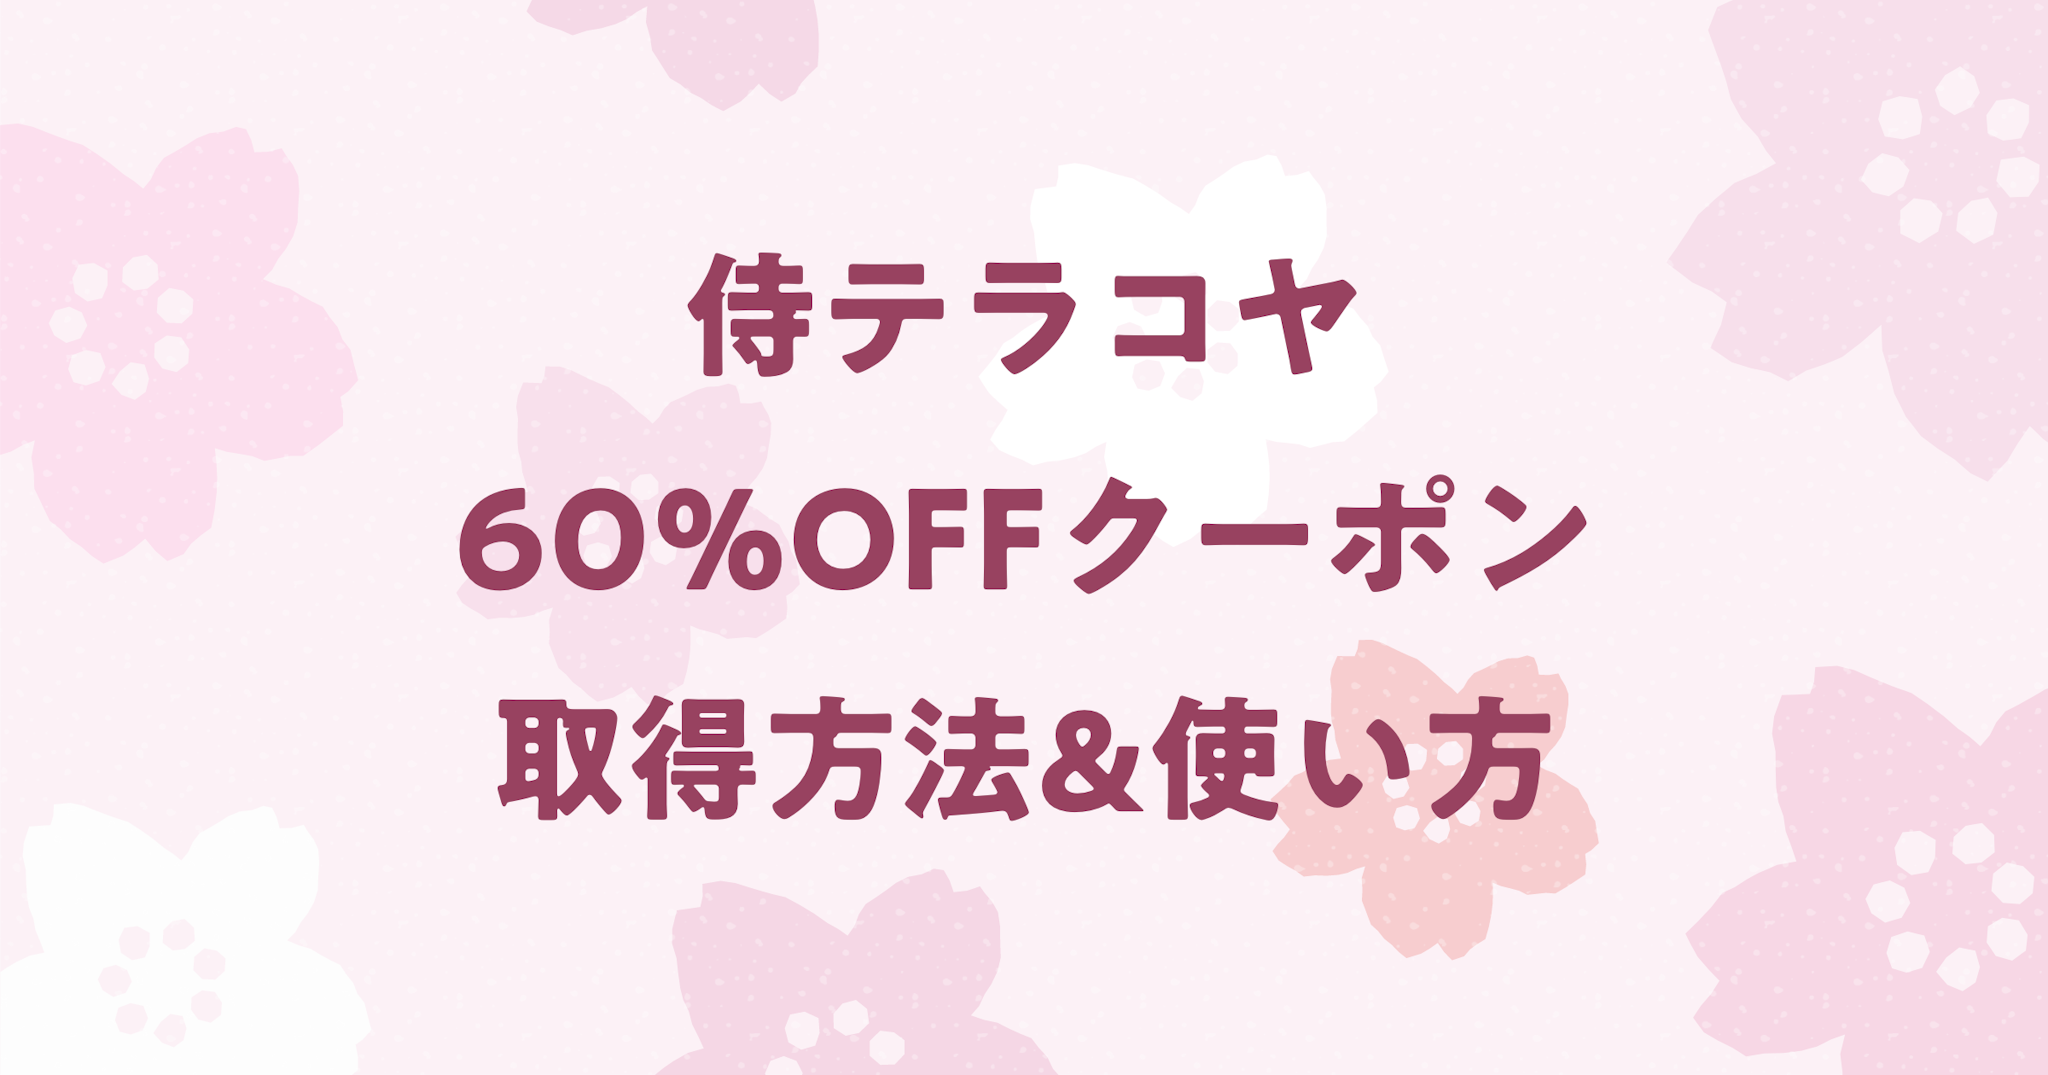 【60%OFF】侍テラコヤの当サイト限定クーポンの取得方法と使い方！